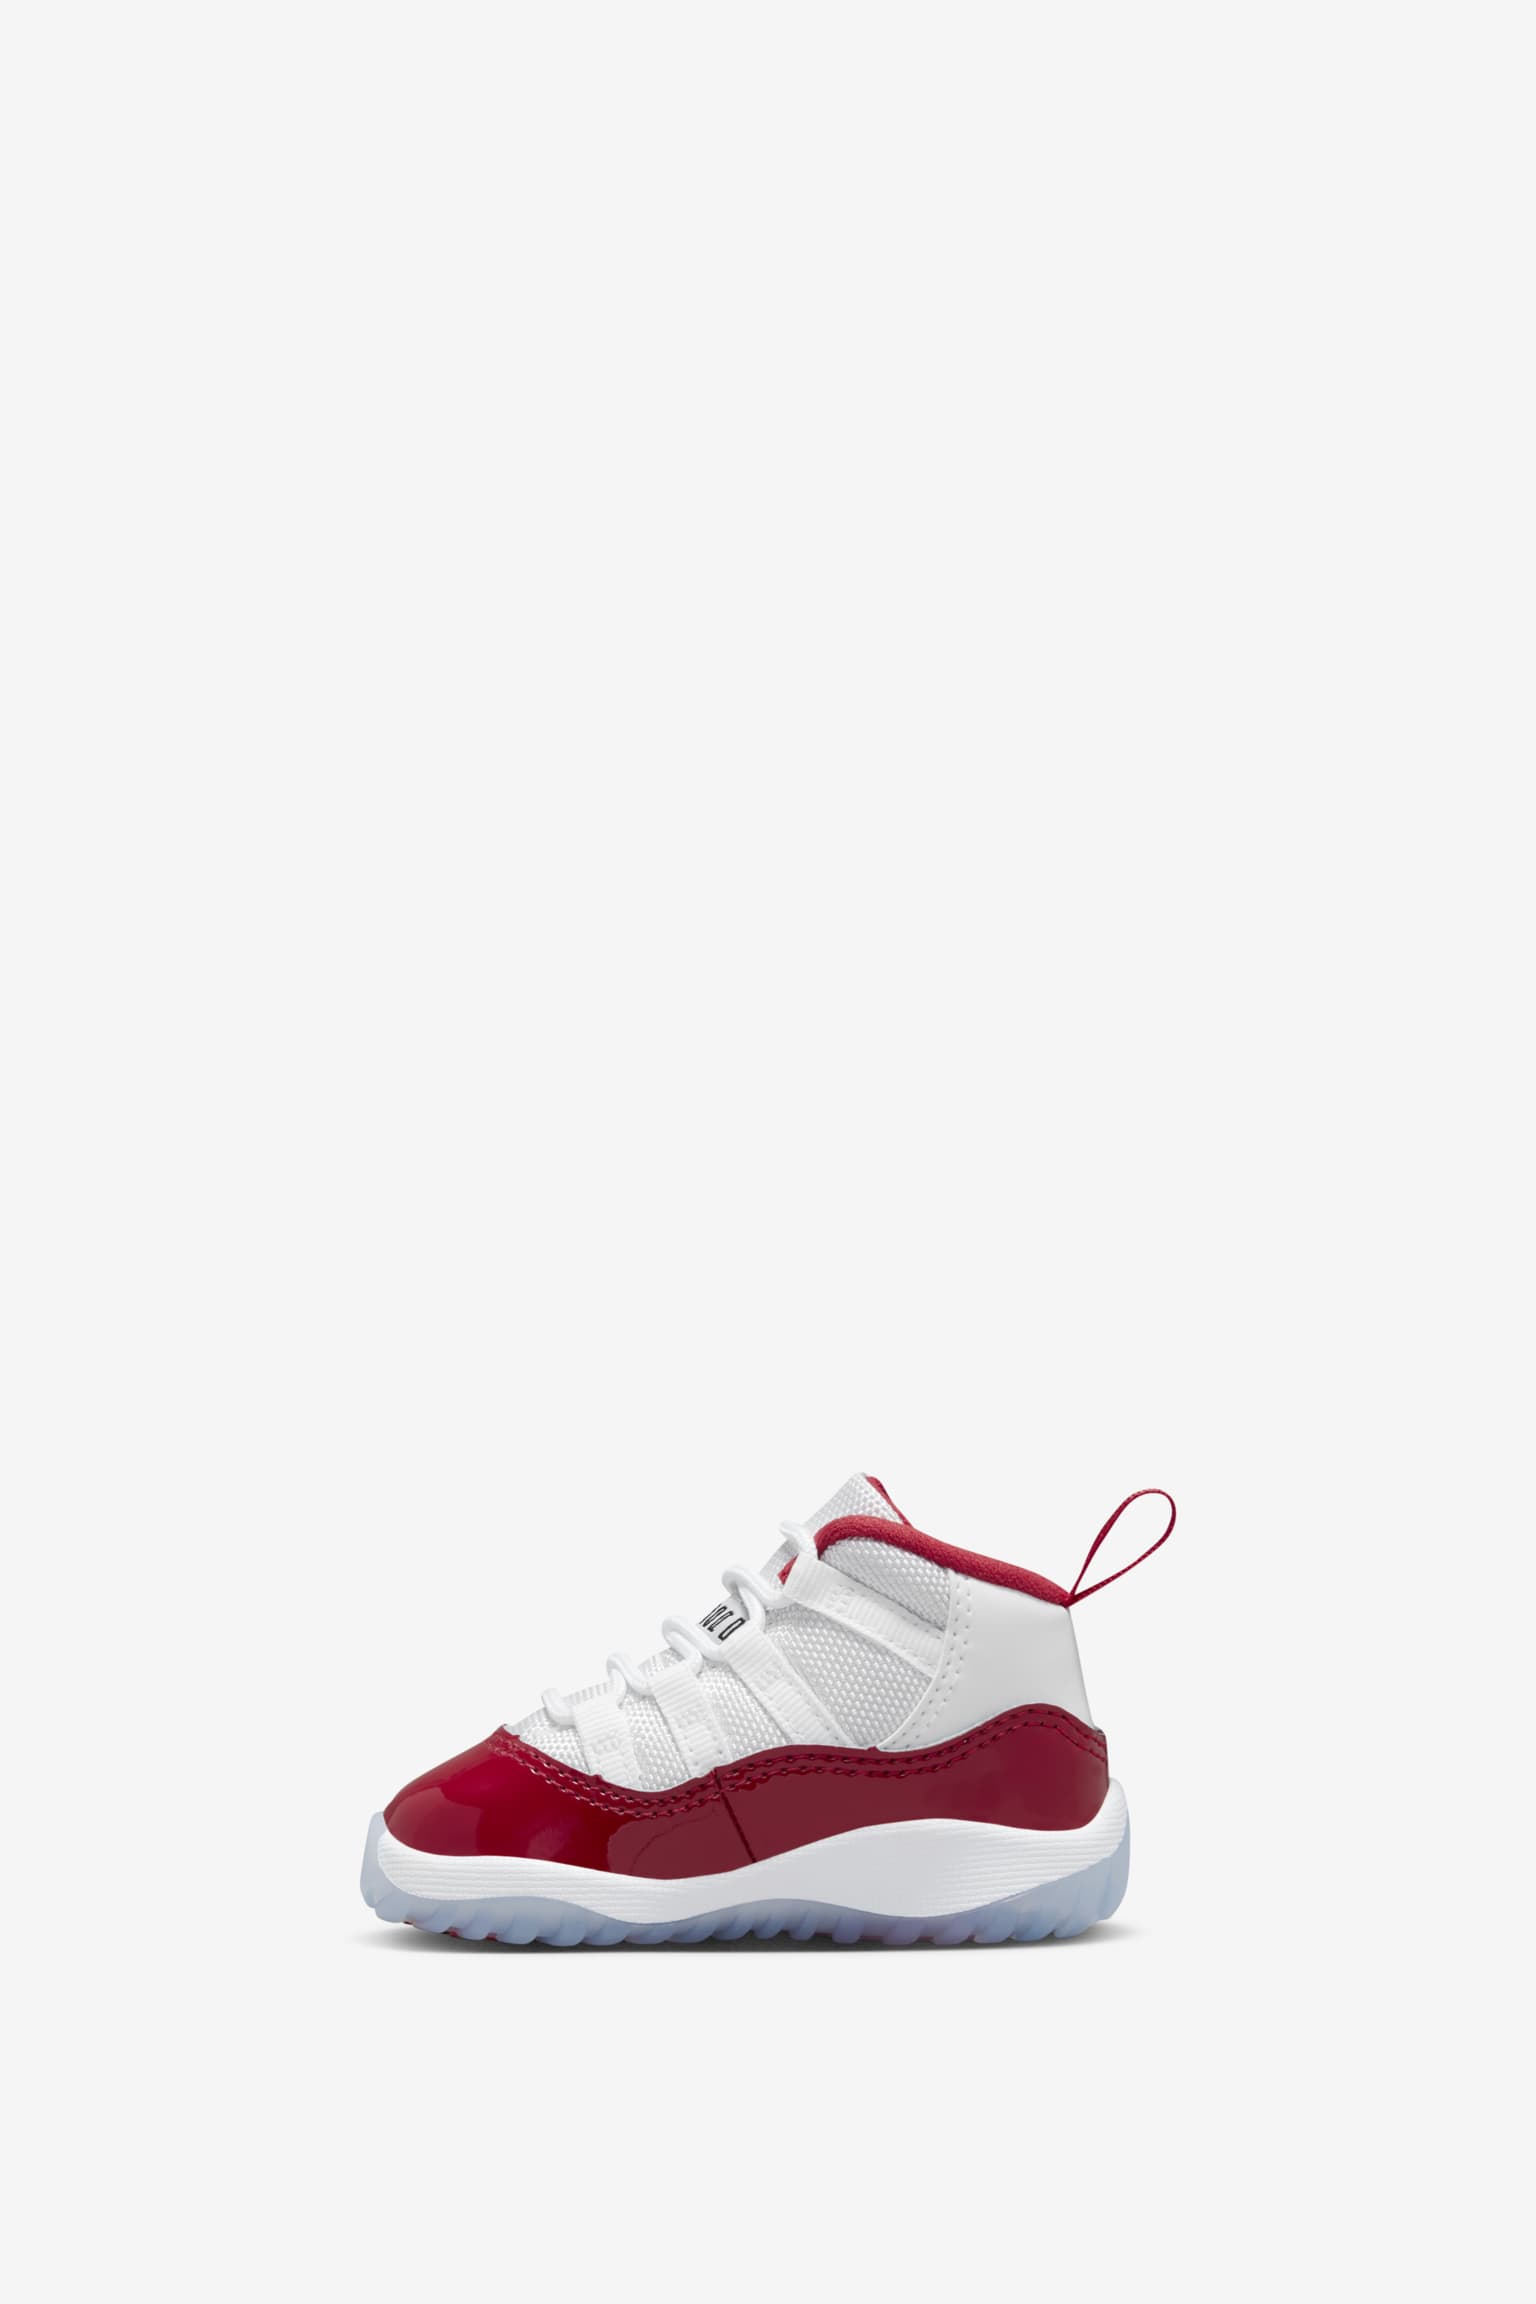 Air Jordan 11 'Varsity Red' (CT8012-116) Release Date. Nike